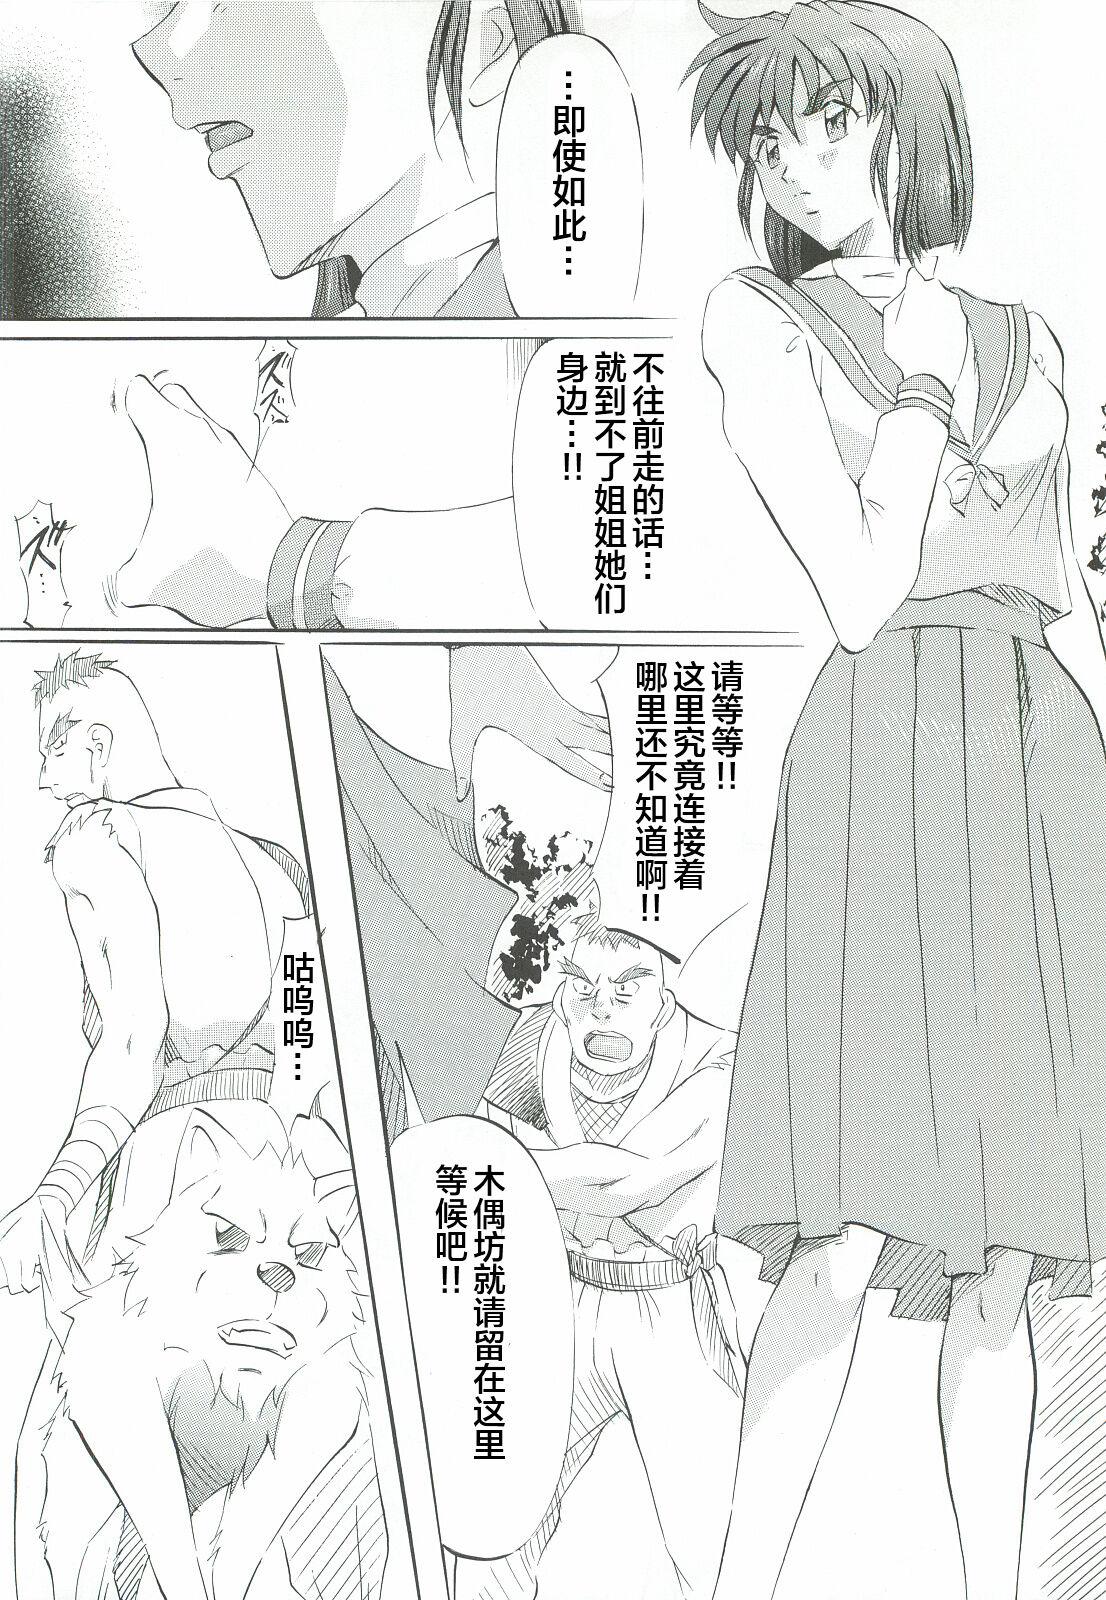 Pelada Ai & Mai Gaiden - Kishin Fukkatsu no Shou - Twin angels | injuu seisen Transsexual - Page 7